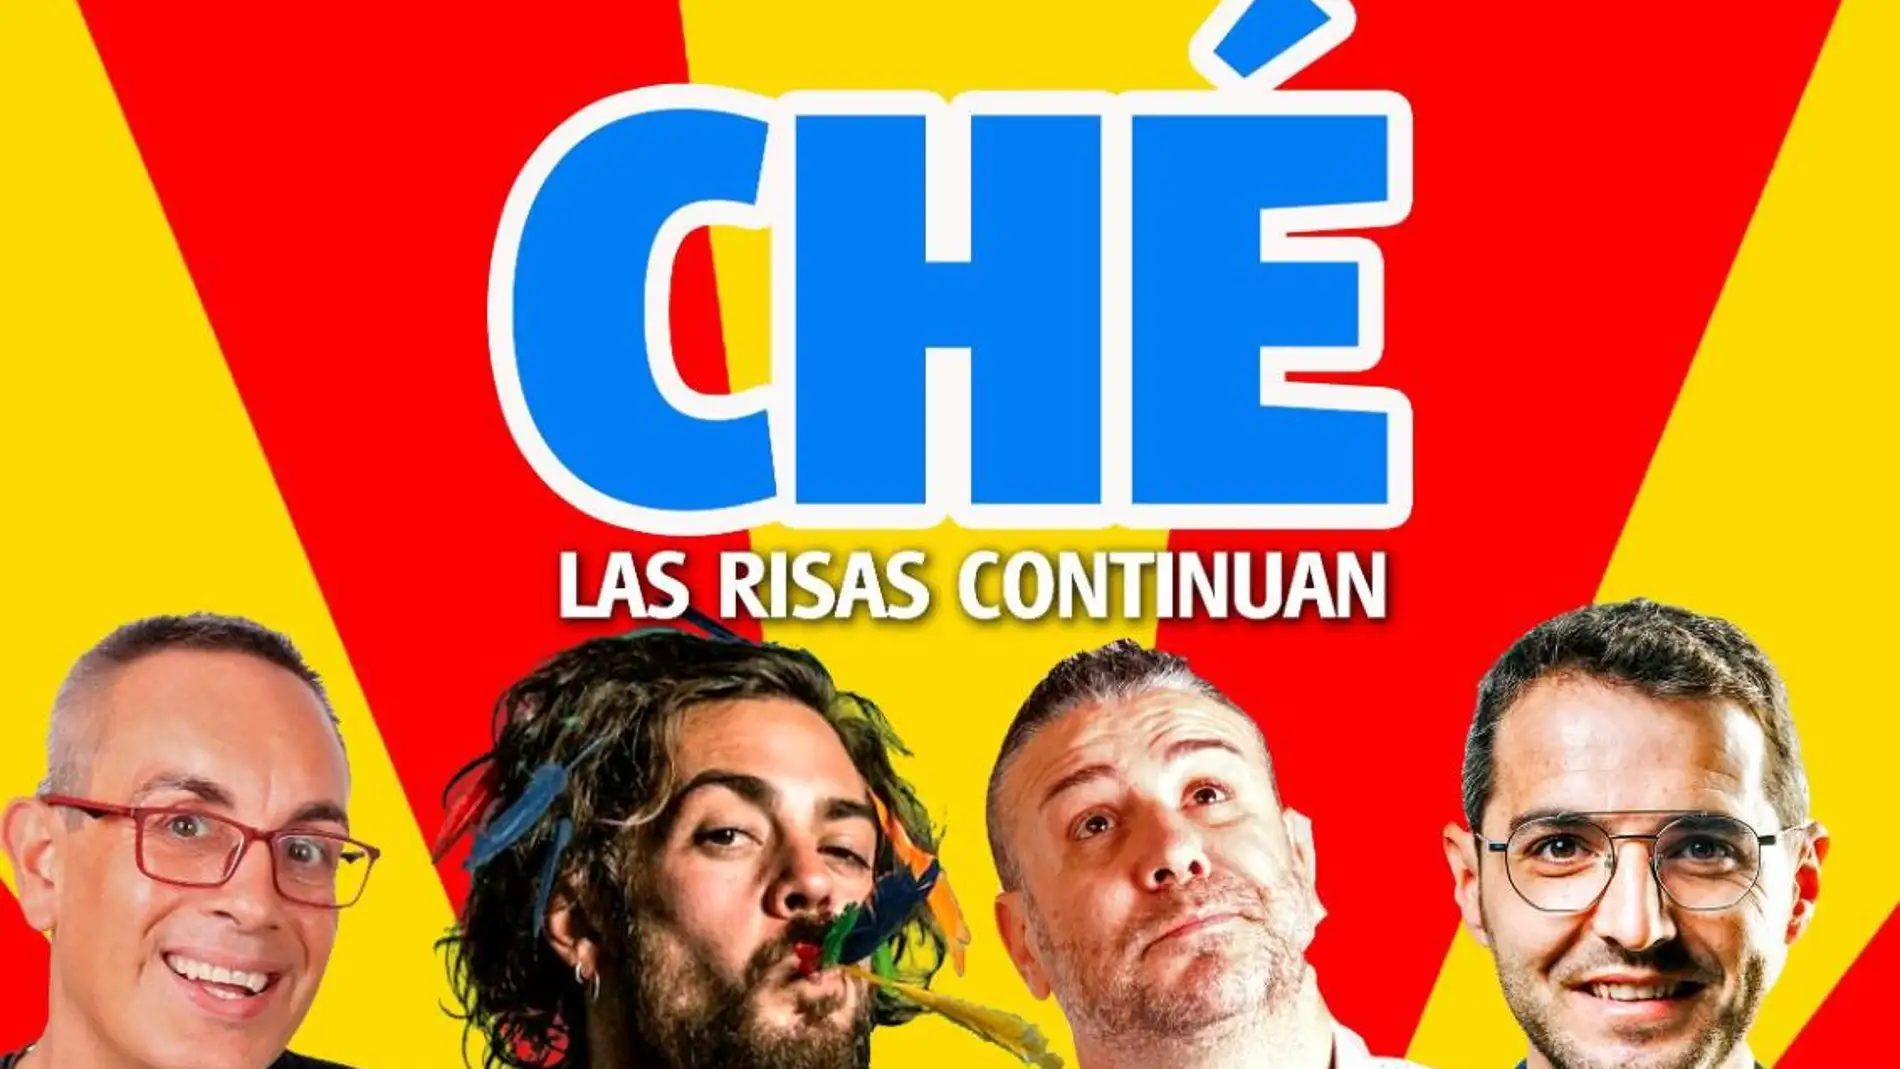 La obra humorista Ché será representada el próximo 8 de octubre en el teatro municipal 